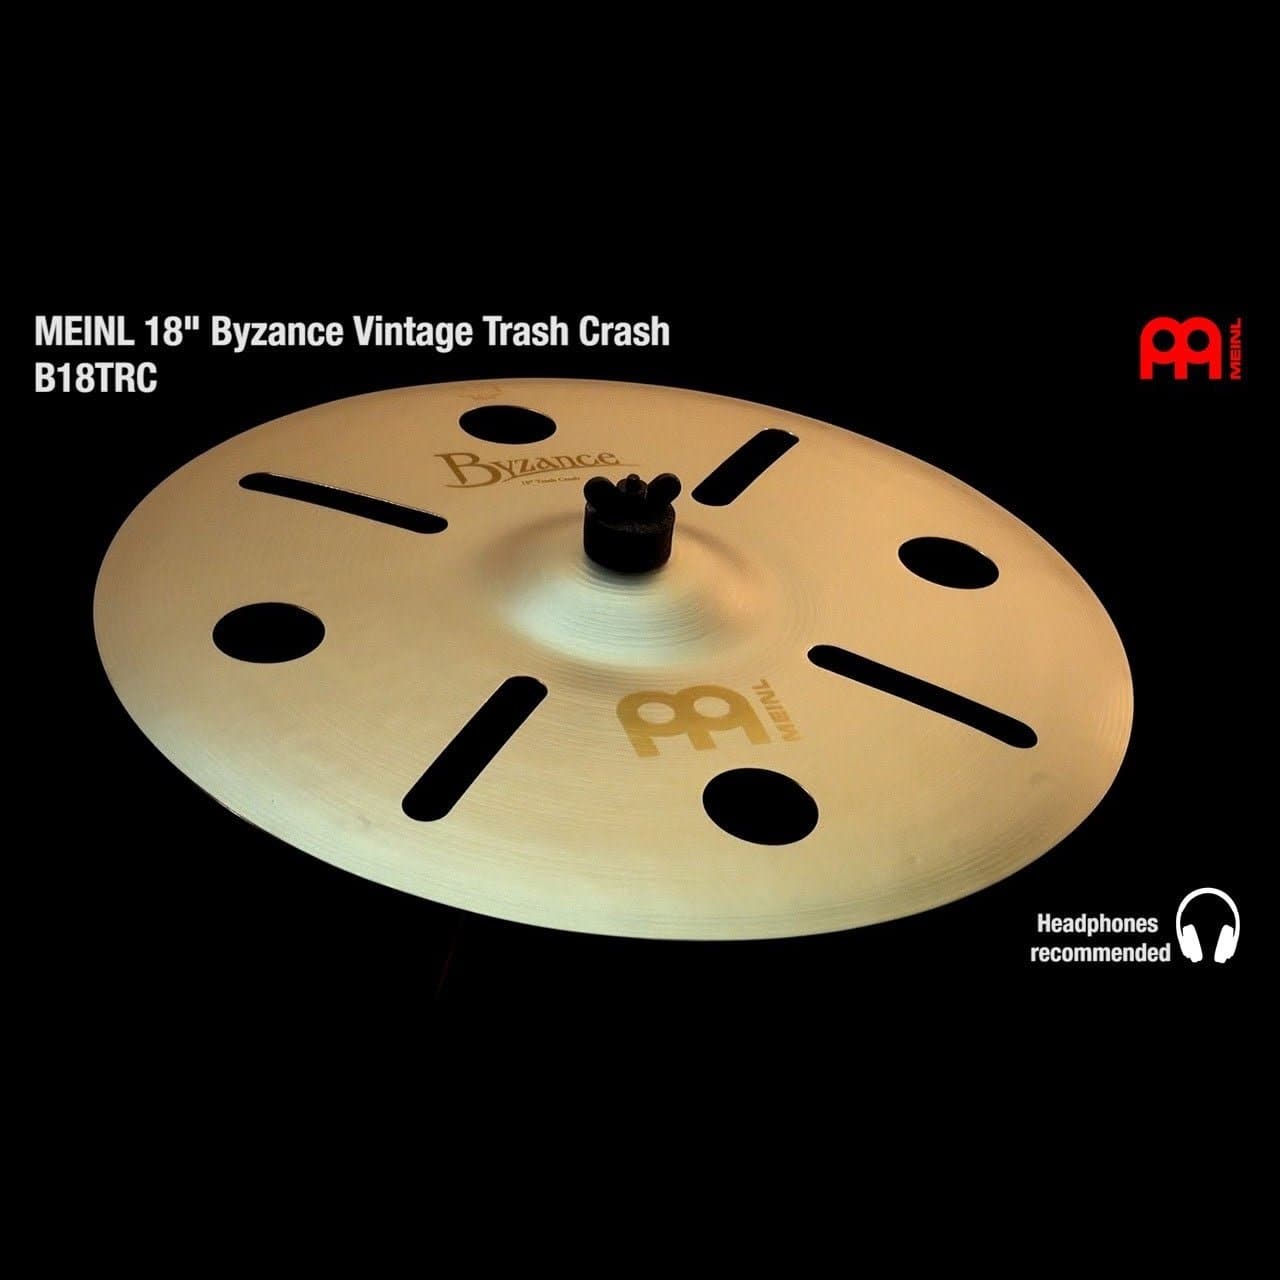 Meinl Byzance Vintage Trash Crash Cymbal 18